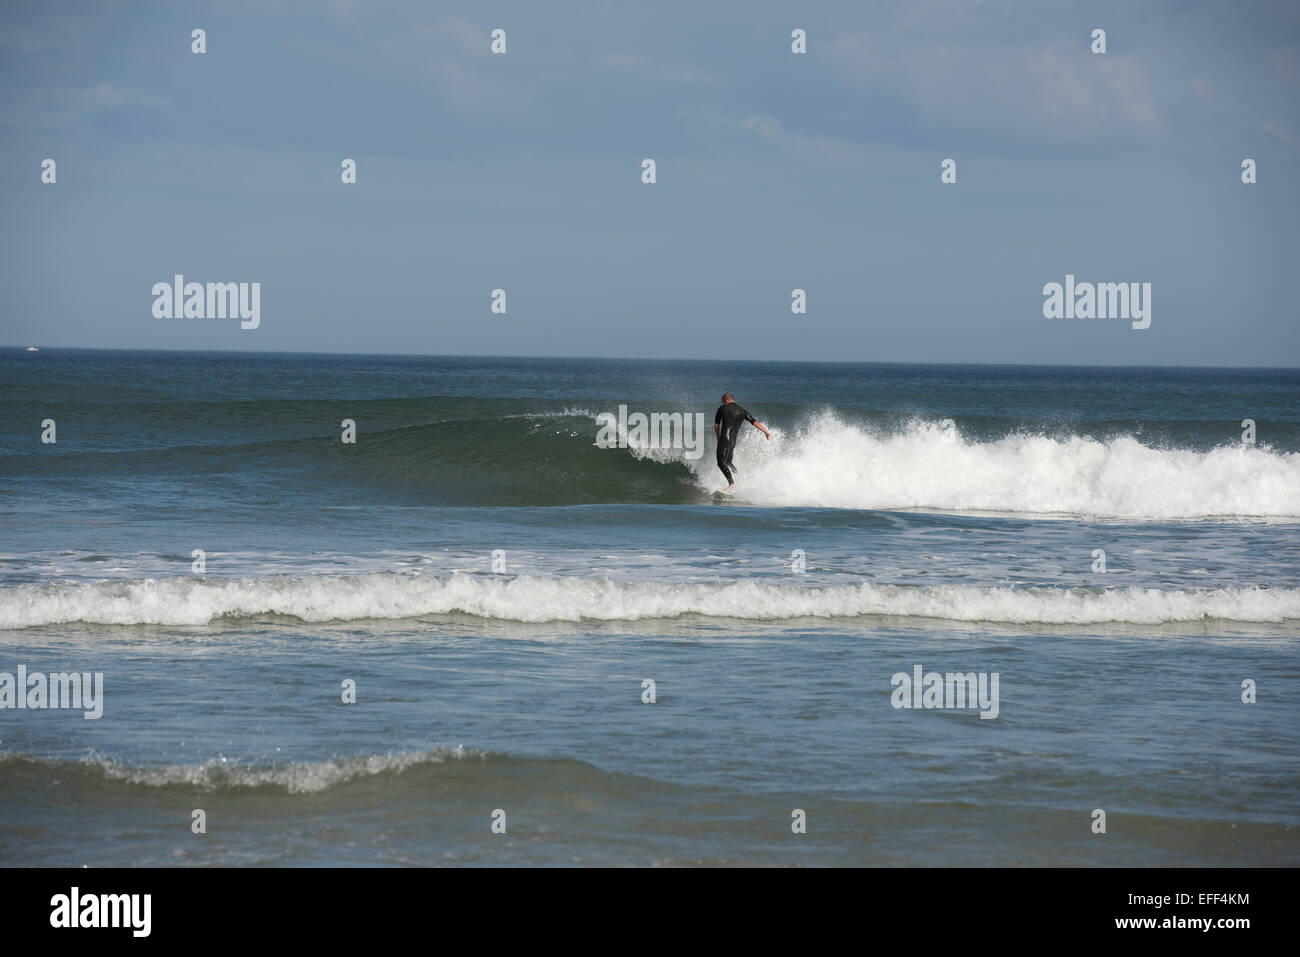 Un homme seul internaute portant une combinaison noire équitation une vague déferlante dans l'océan Atlantique près de Daytona Beach, Floride, USA. Banque D'Images